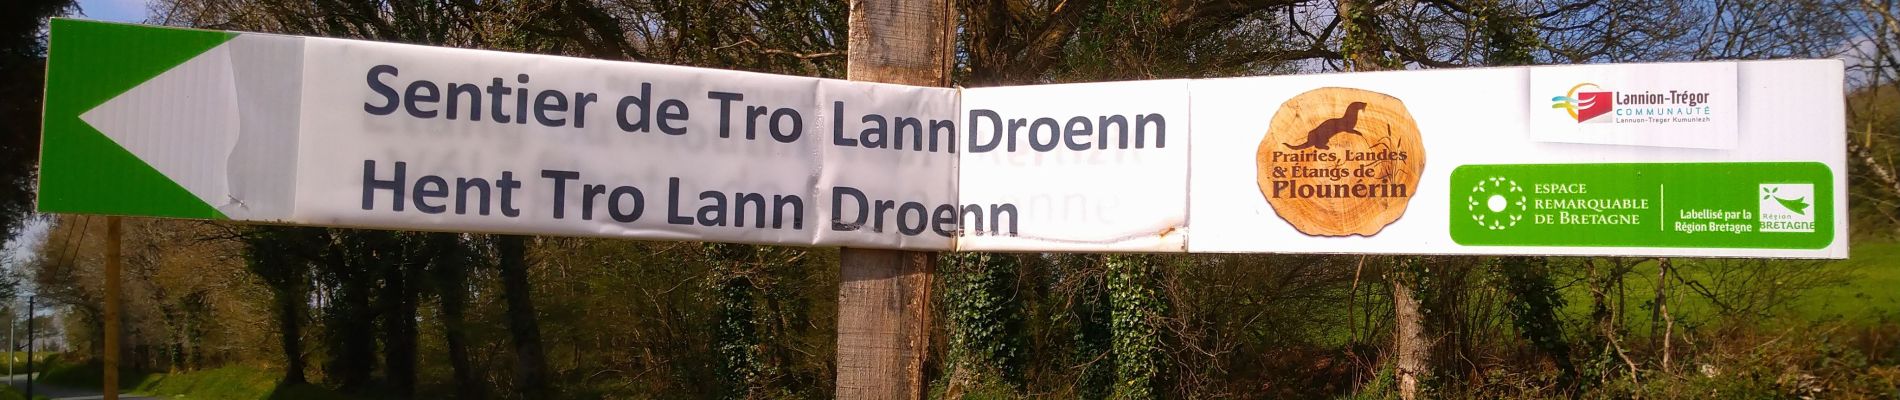 Tour Wandern Plounérin - Tro Lann Droenn - Photo